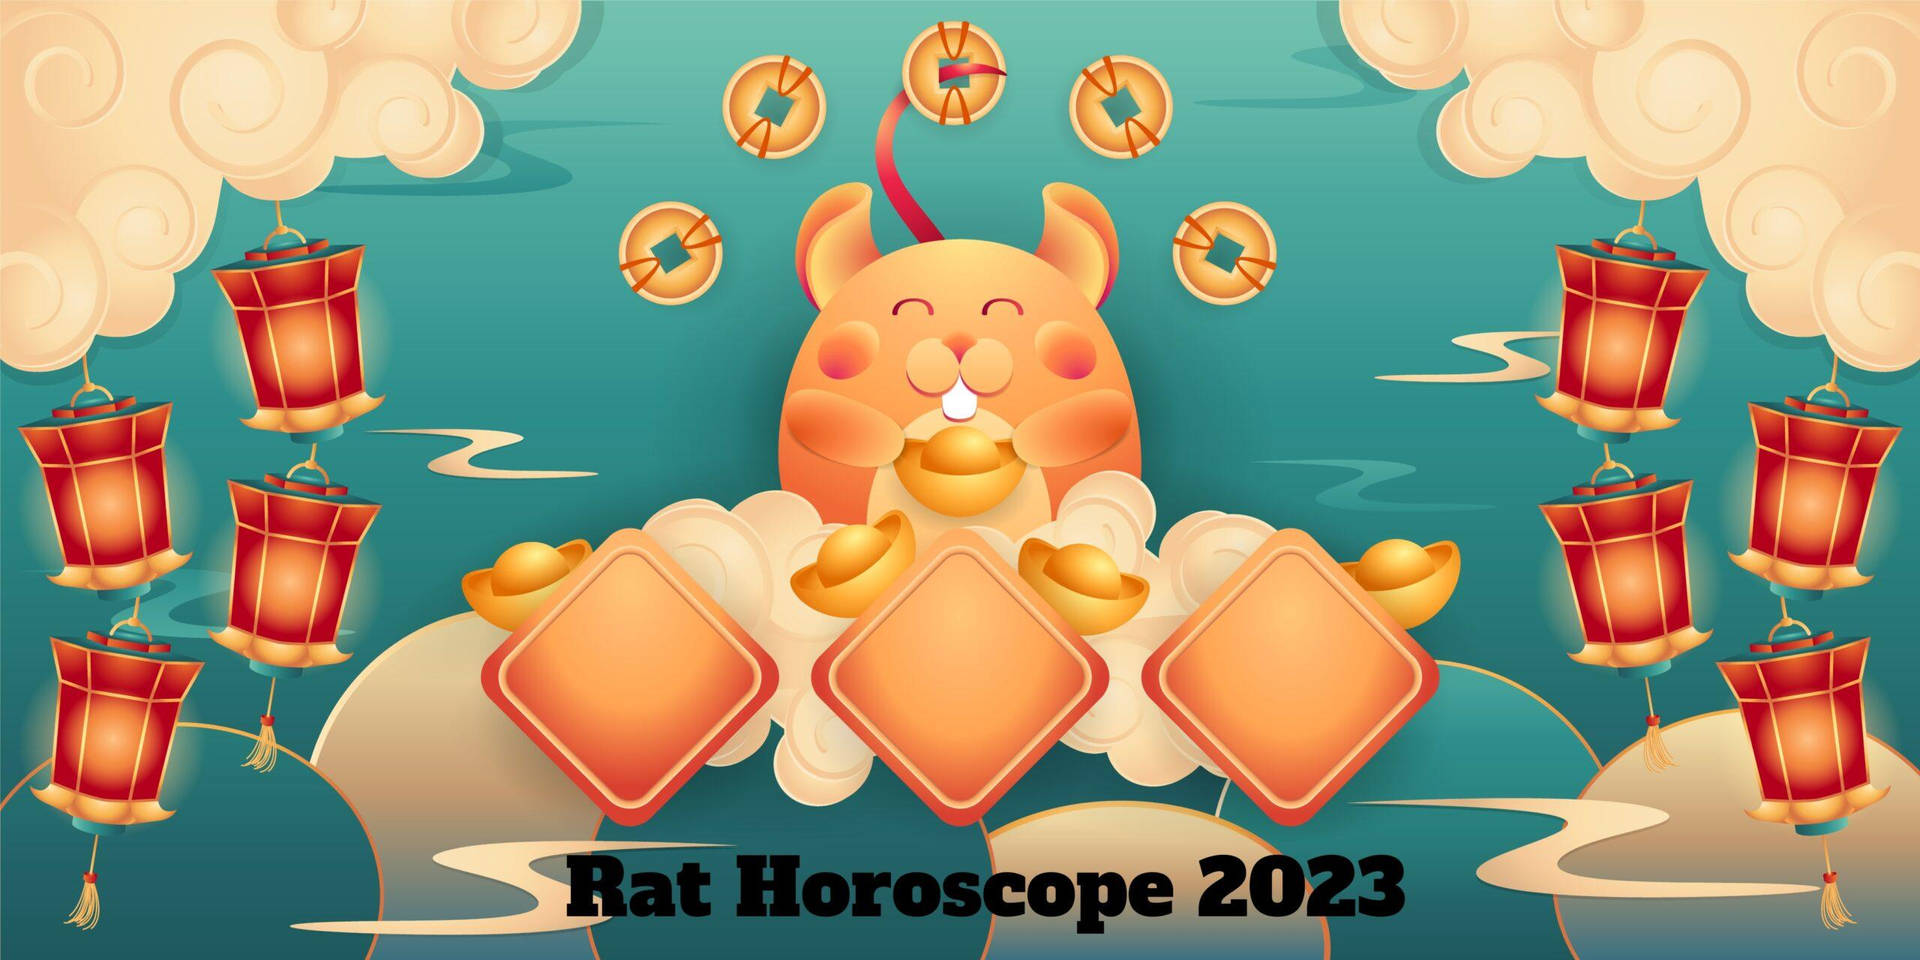 Rat Horoscope 2023